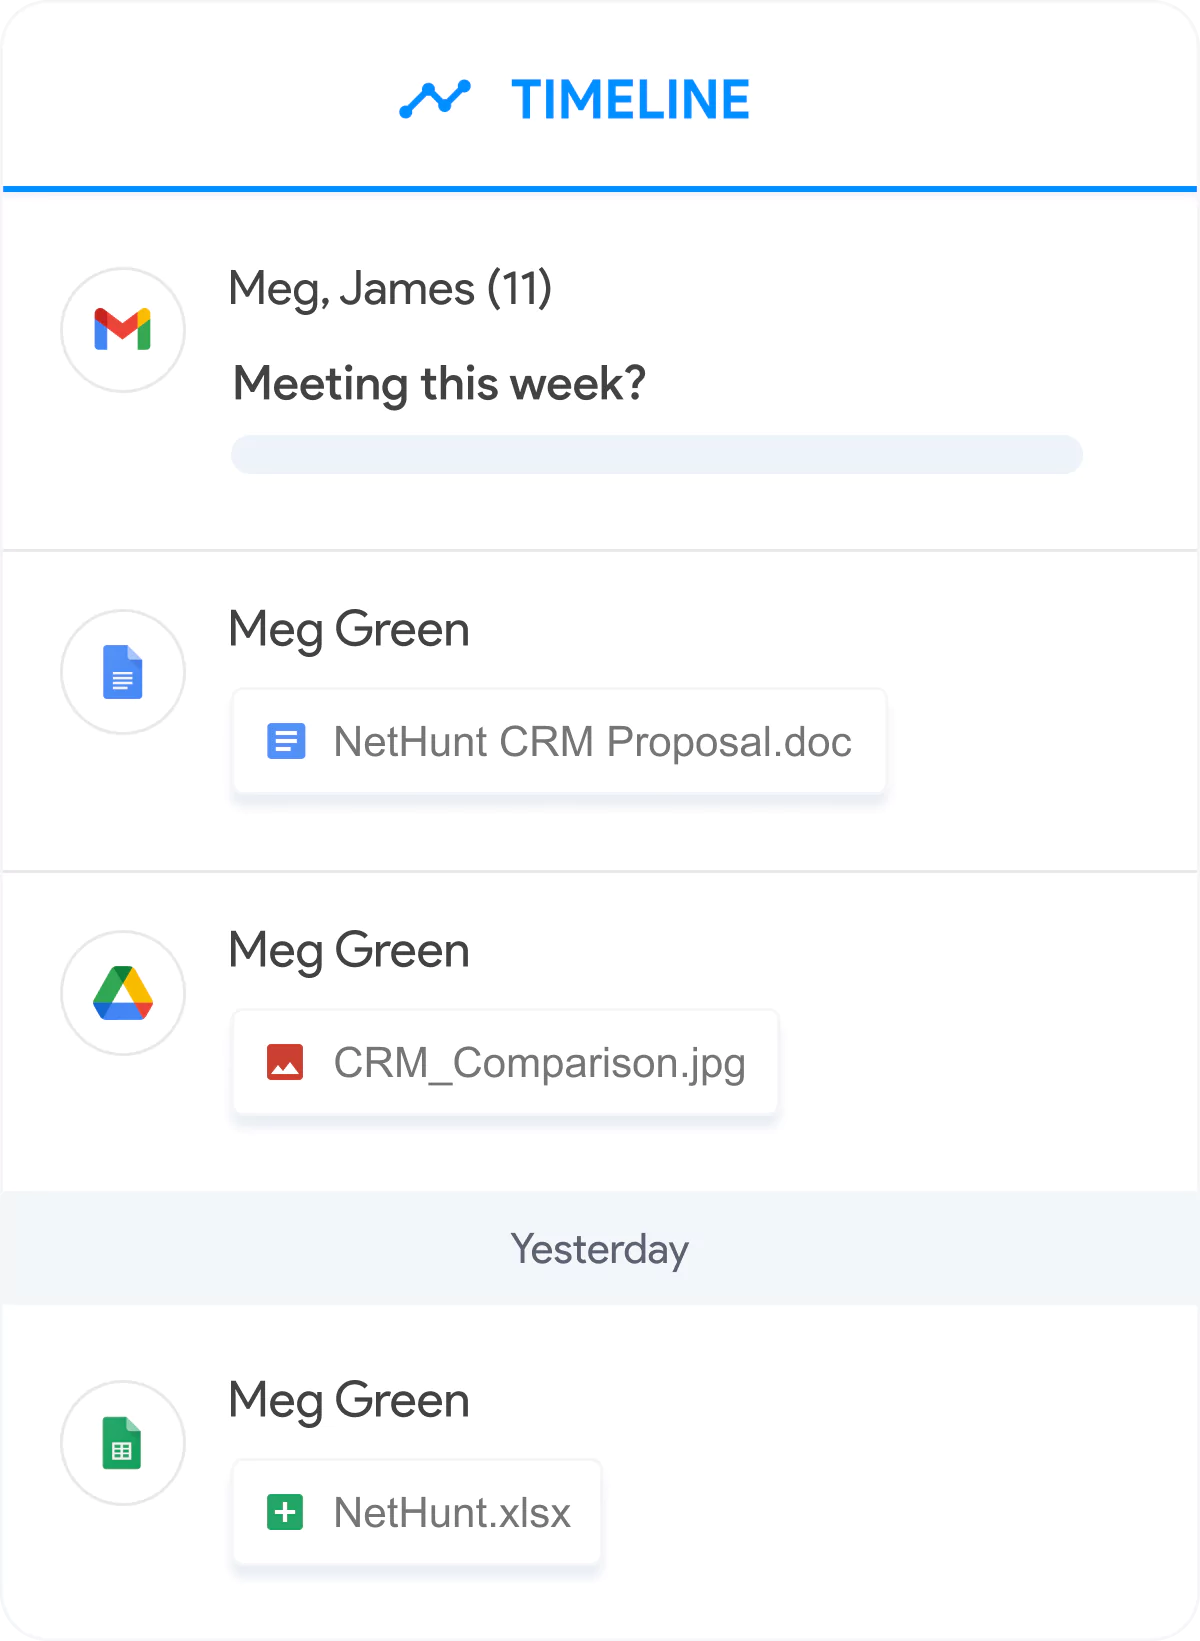 Meg Green's timeline screen